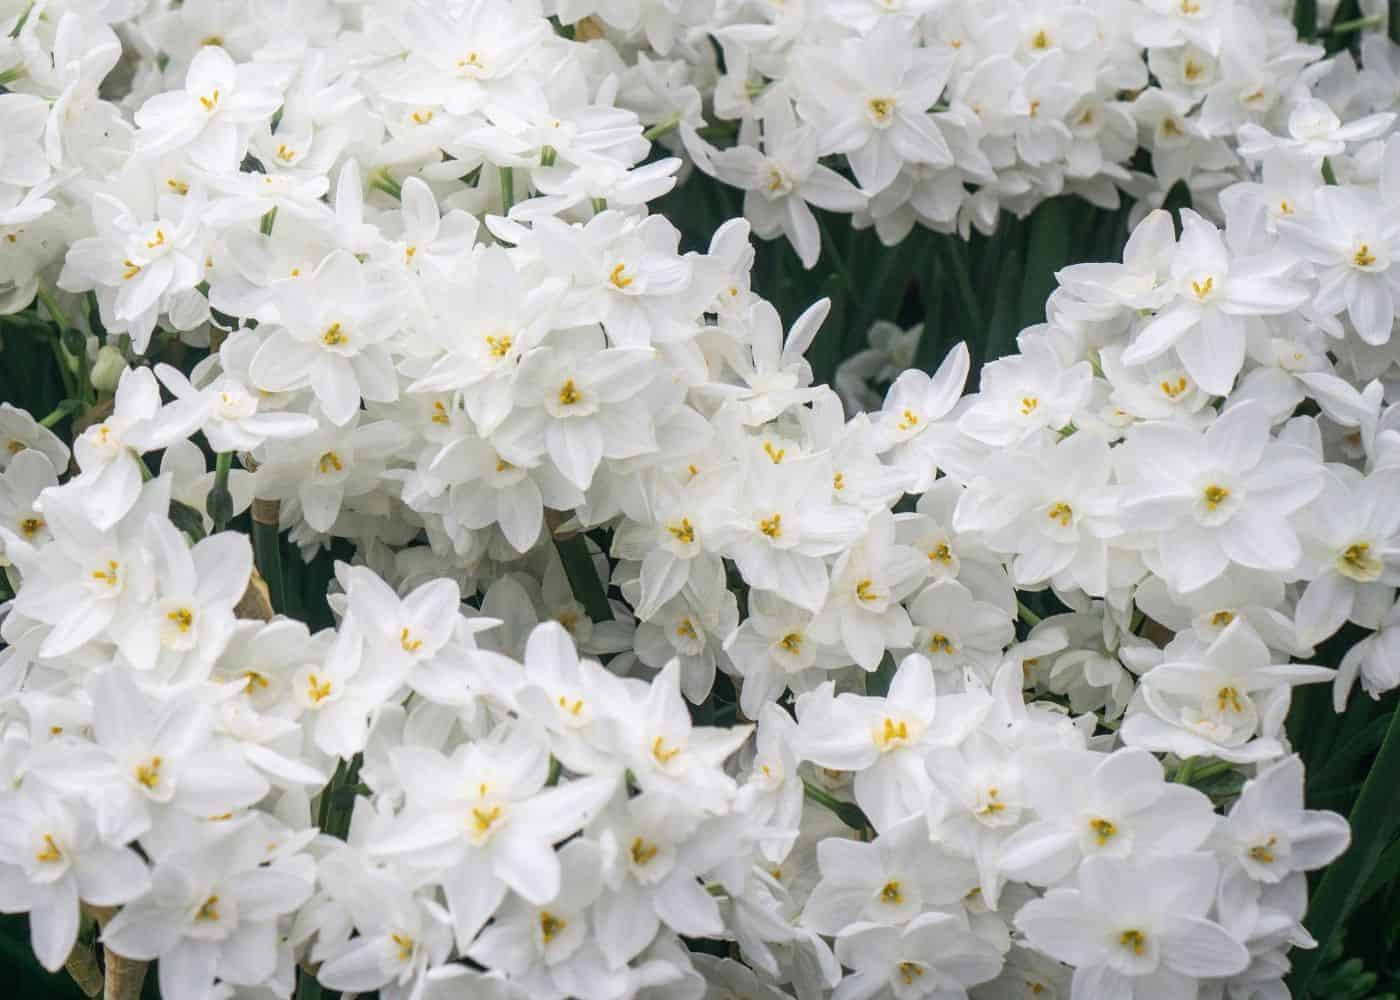 Paperwhite flowers in bloom